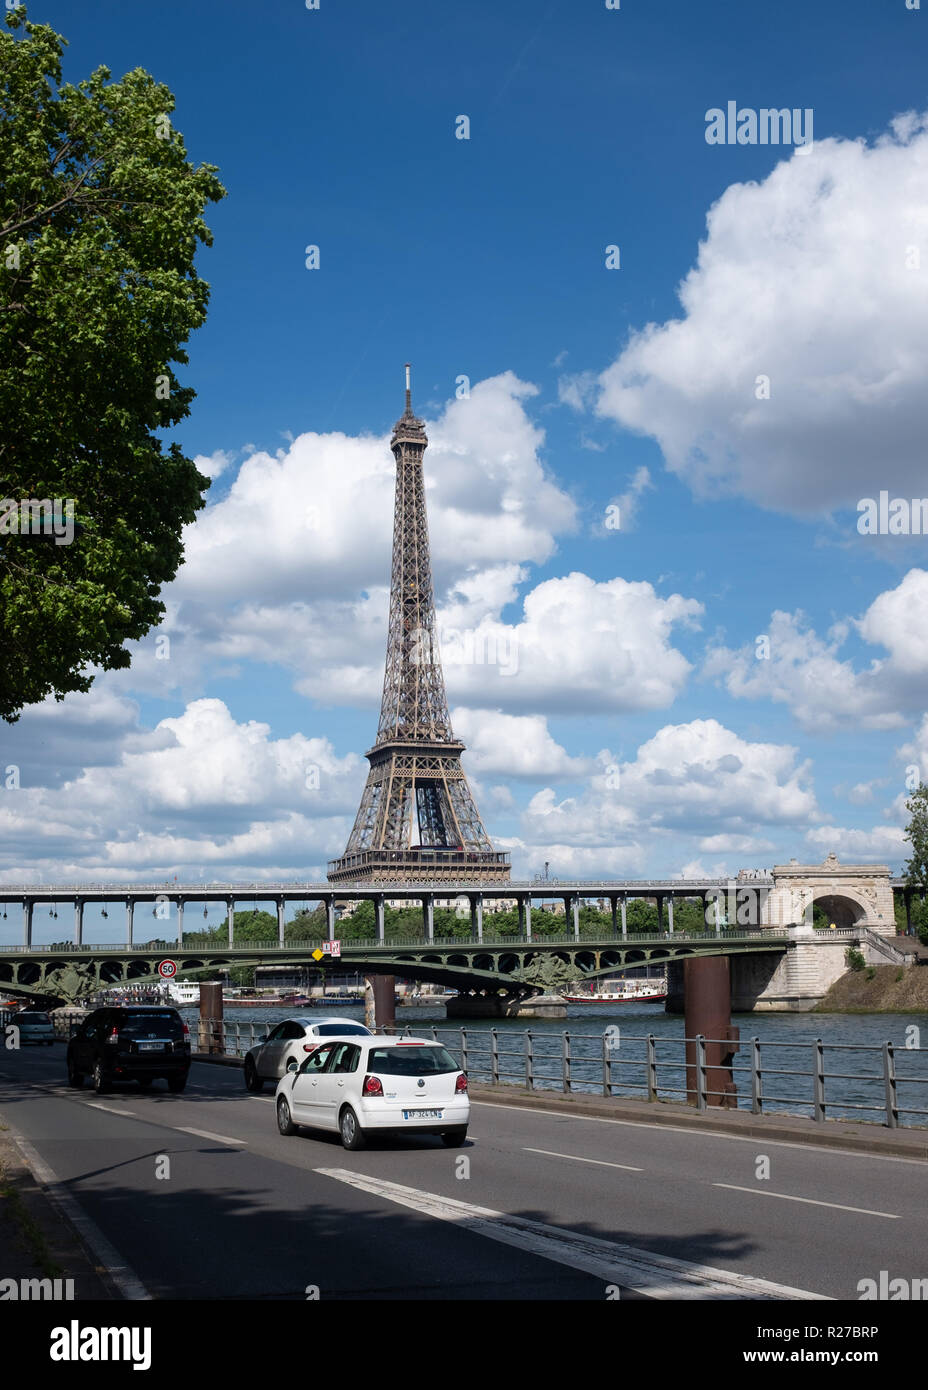 Les wagons sur rue avec la Tour Eiffel et de la Seine en arrière-plan, Paris, France Banque D'Images